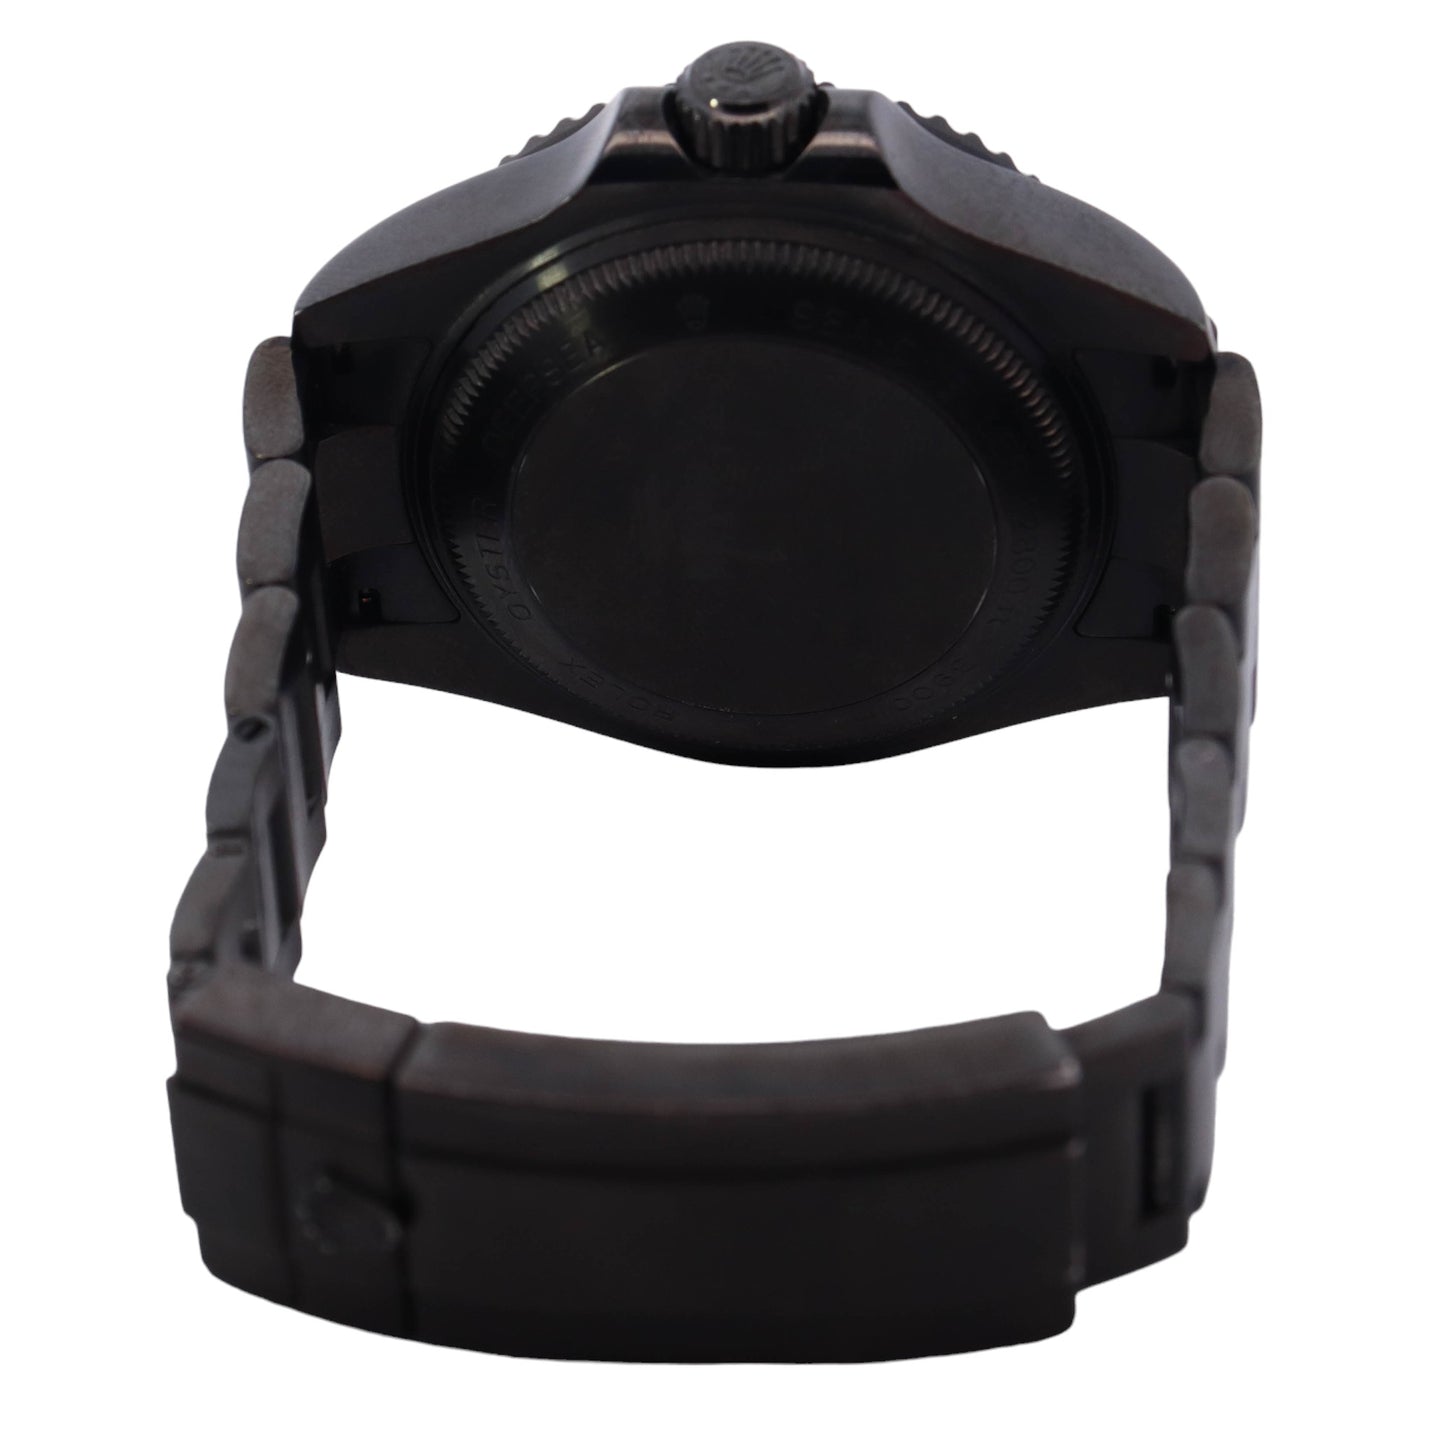 Rolex Sea-Dweller Deepsea Custom Black PVD 44mm Black Dot Dial Watch Reference# 126660 - Happy Jewelers Fine Jewelry Lifetime Warranty